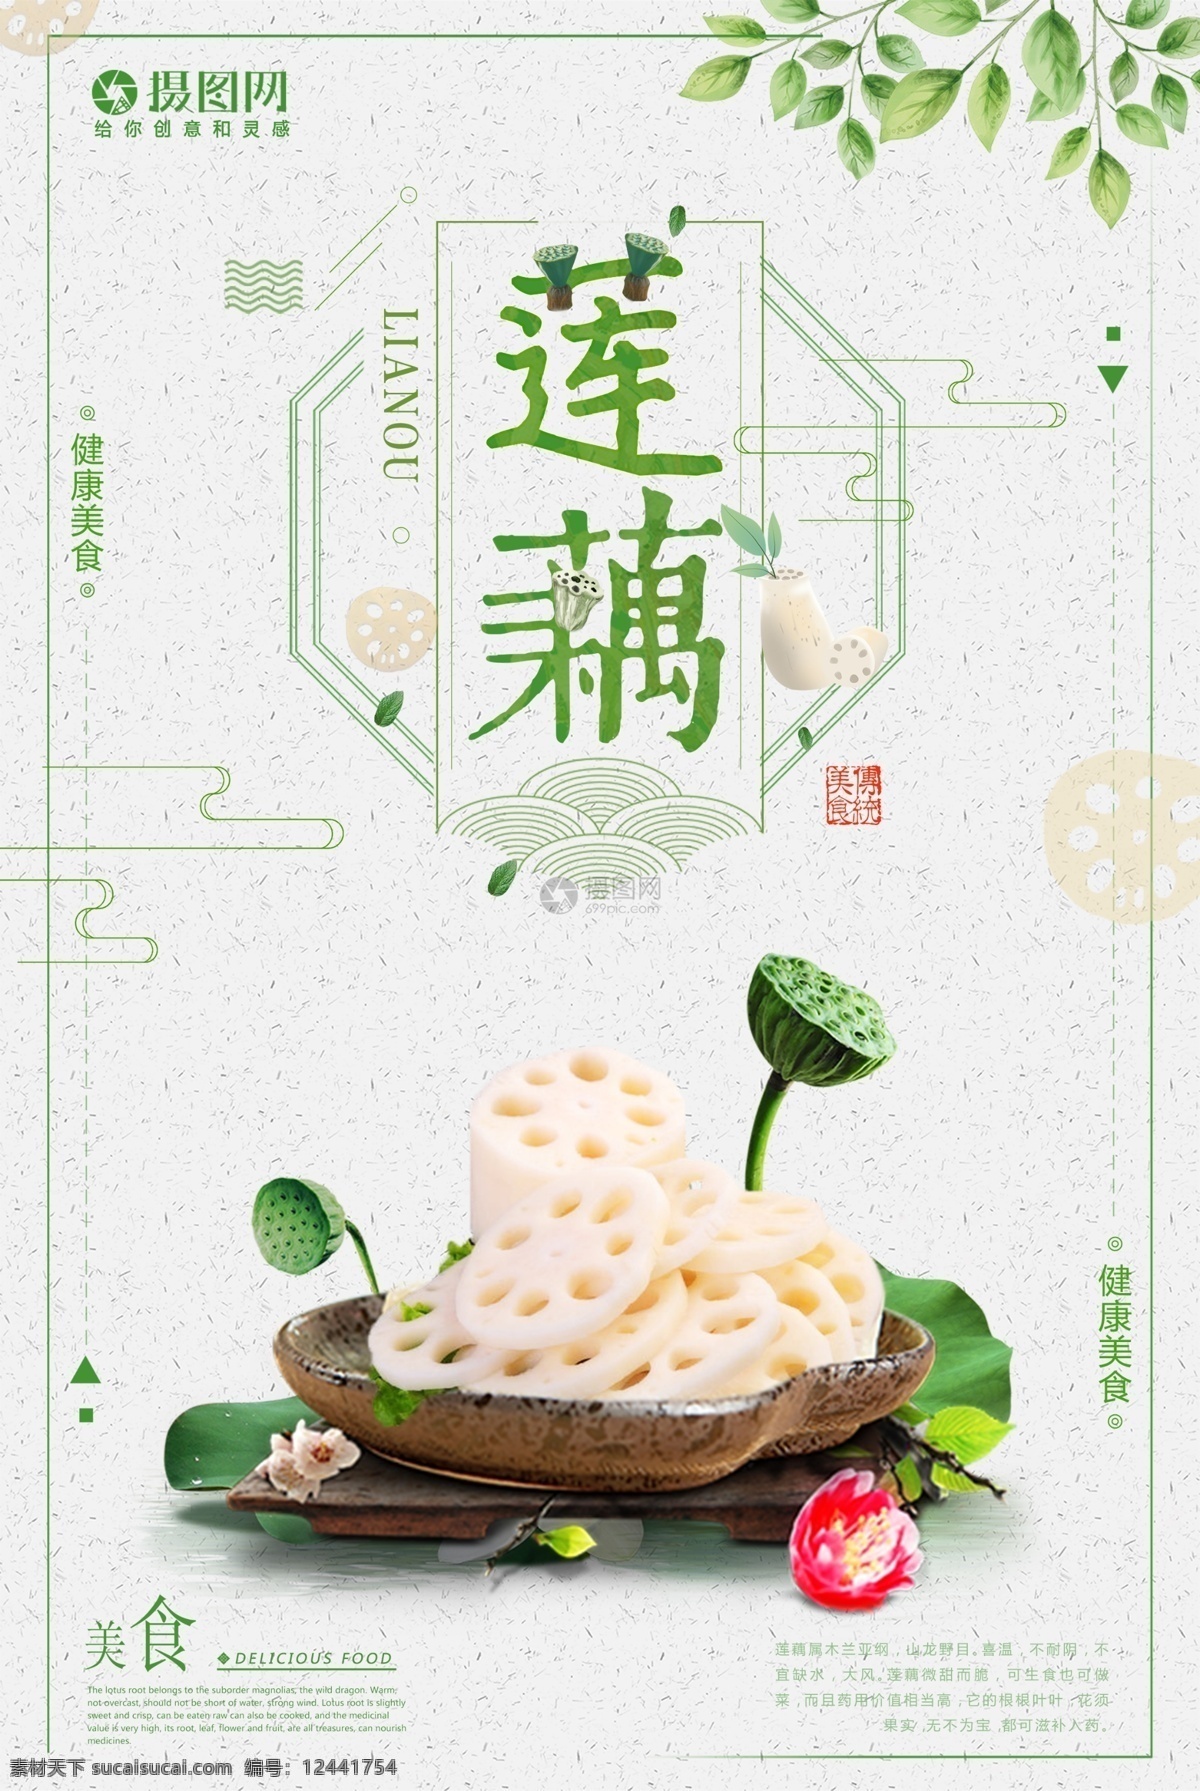 莲藕海报设计 莲藕 美食 蔬菜 绿色 莲蓬 健康 美味 新鲜 健康美食 简约 海报